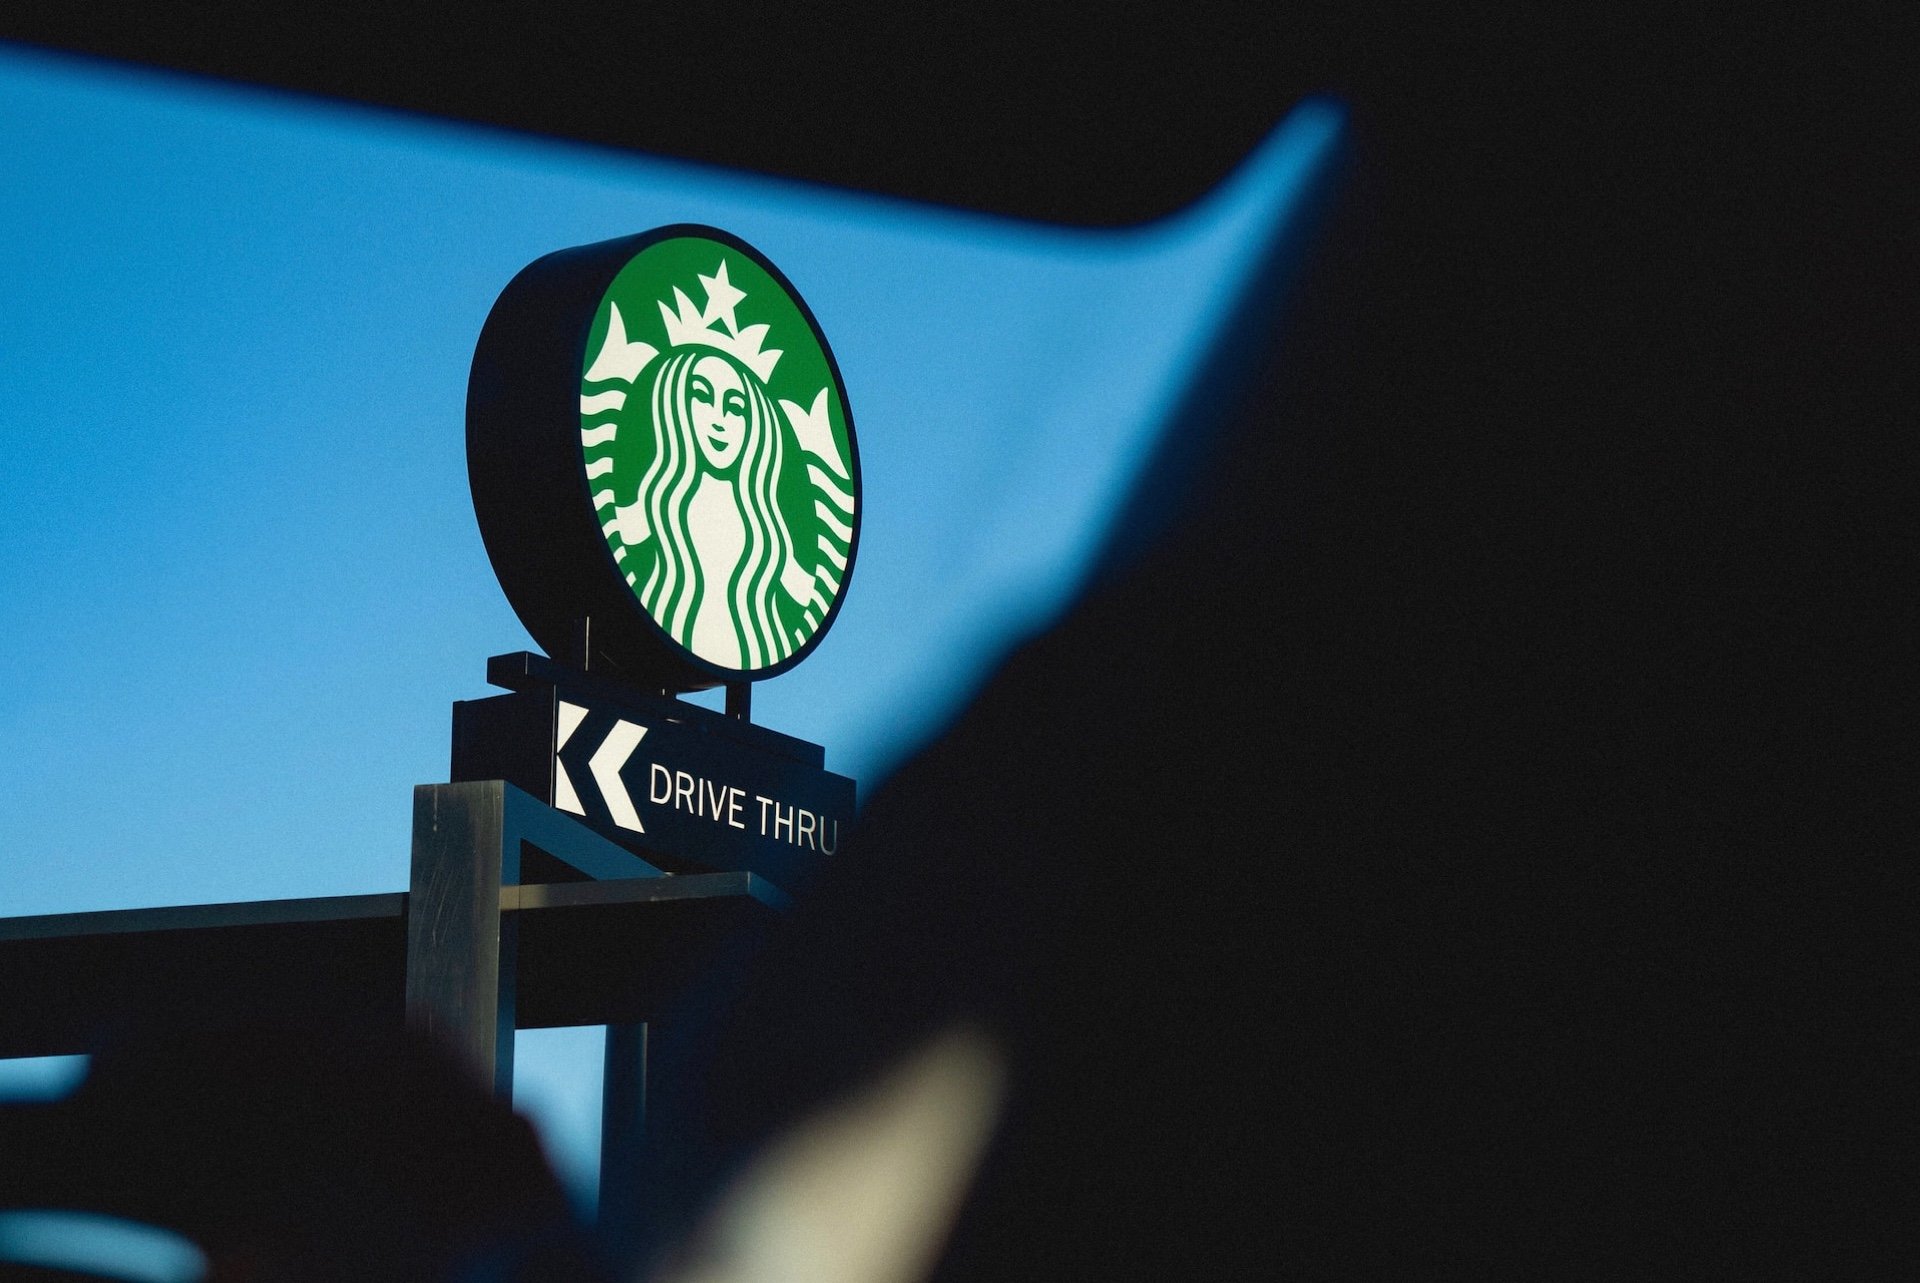 Starbucks logo evolution